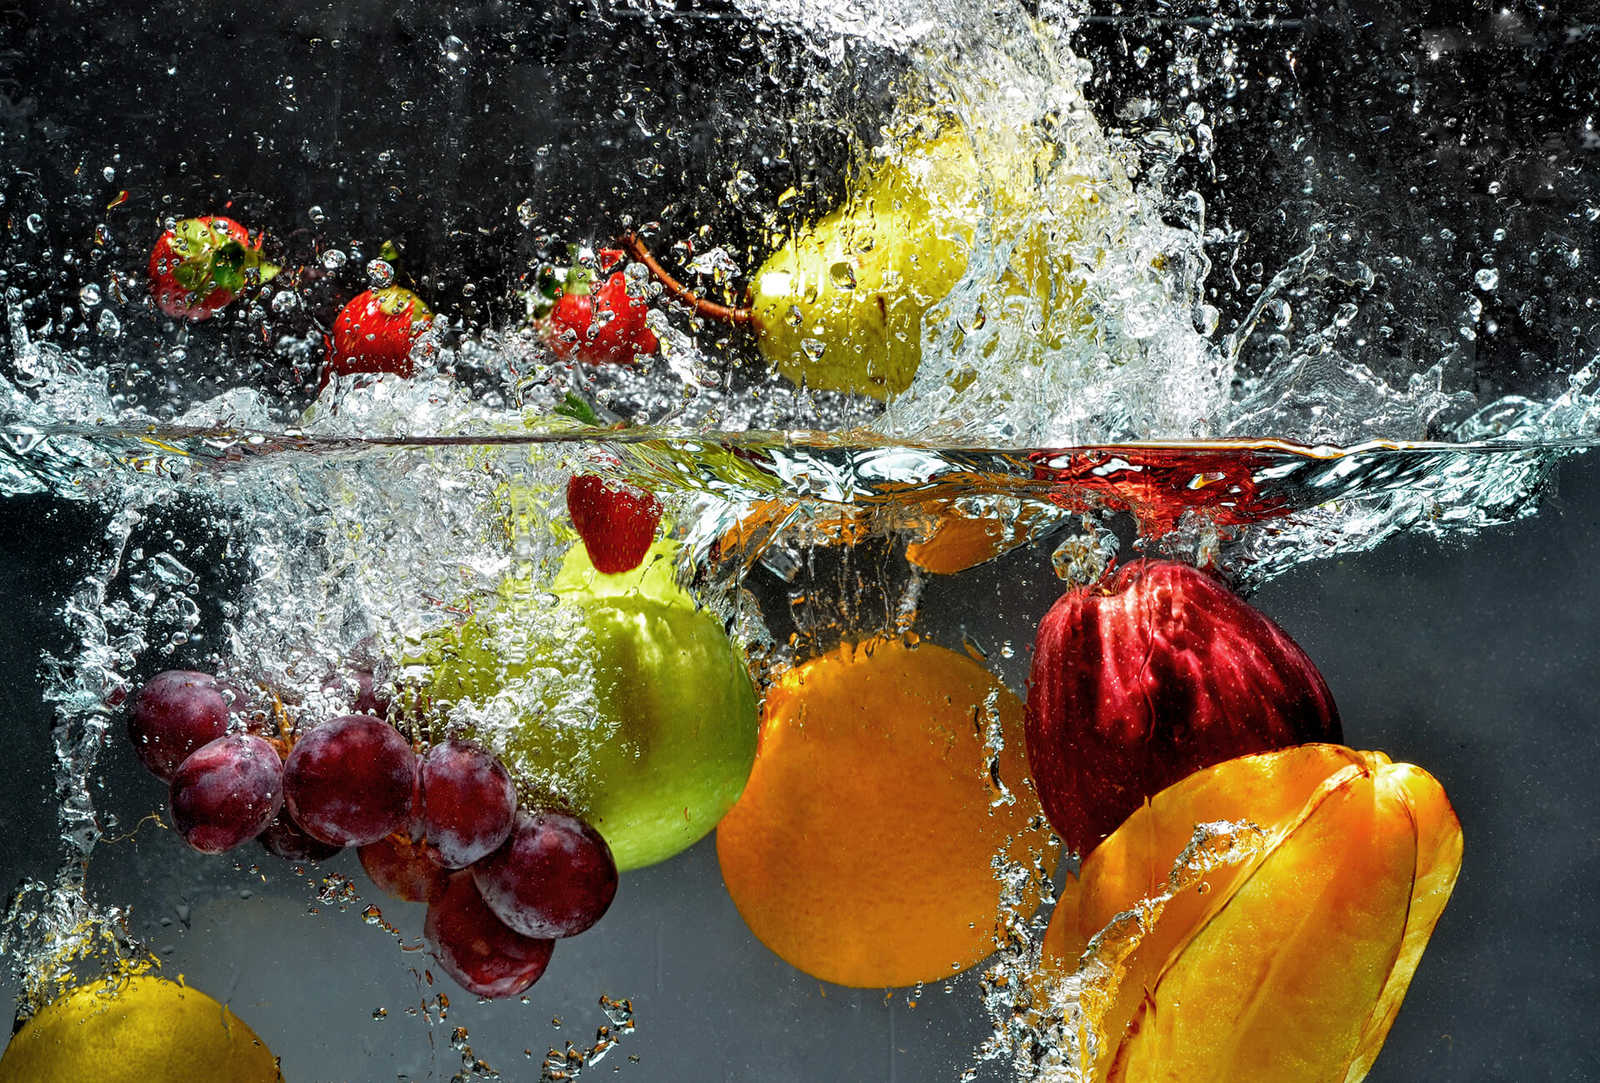         Fototapete frisches Obst und Wasser – Bunt, Gelb, Rot
    